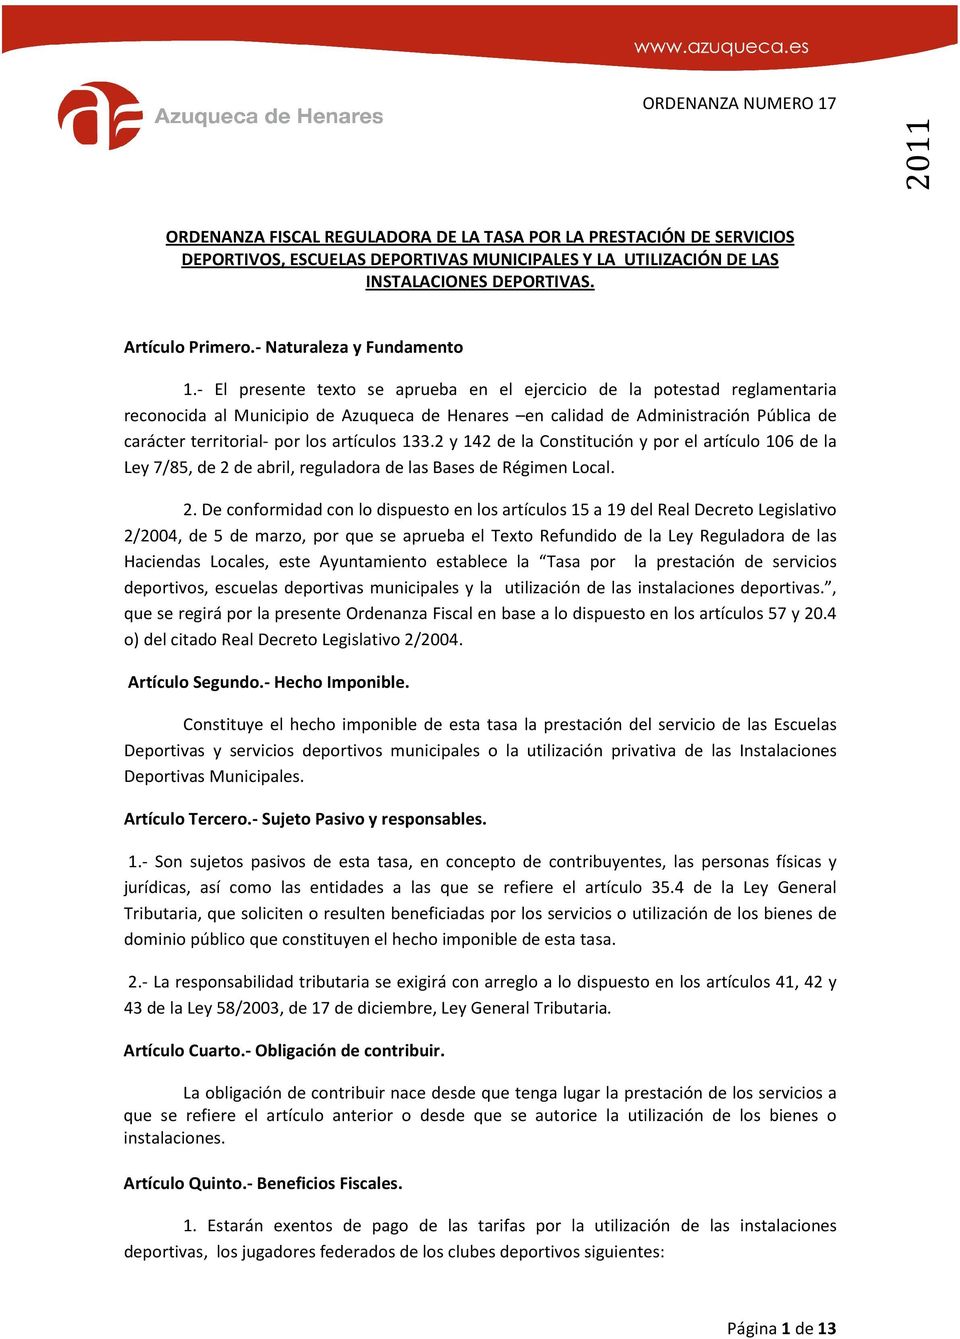 - El presente texto se aprueba en el ejercicio de la potestad reglamentaria reconocida al Municipio de Azuqueca de Henares en calidad de Administración Pública de carácter territorial- por los